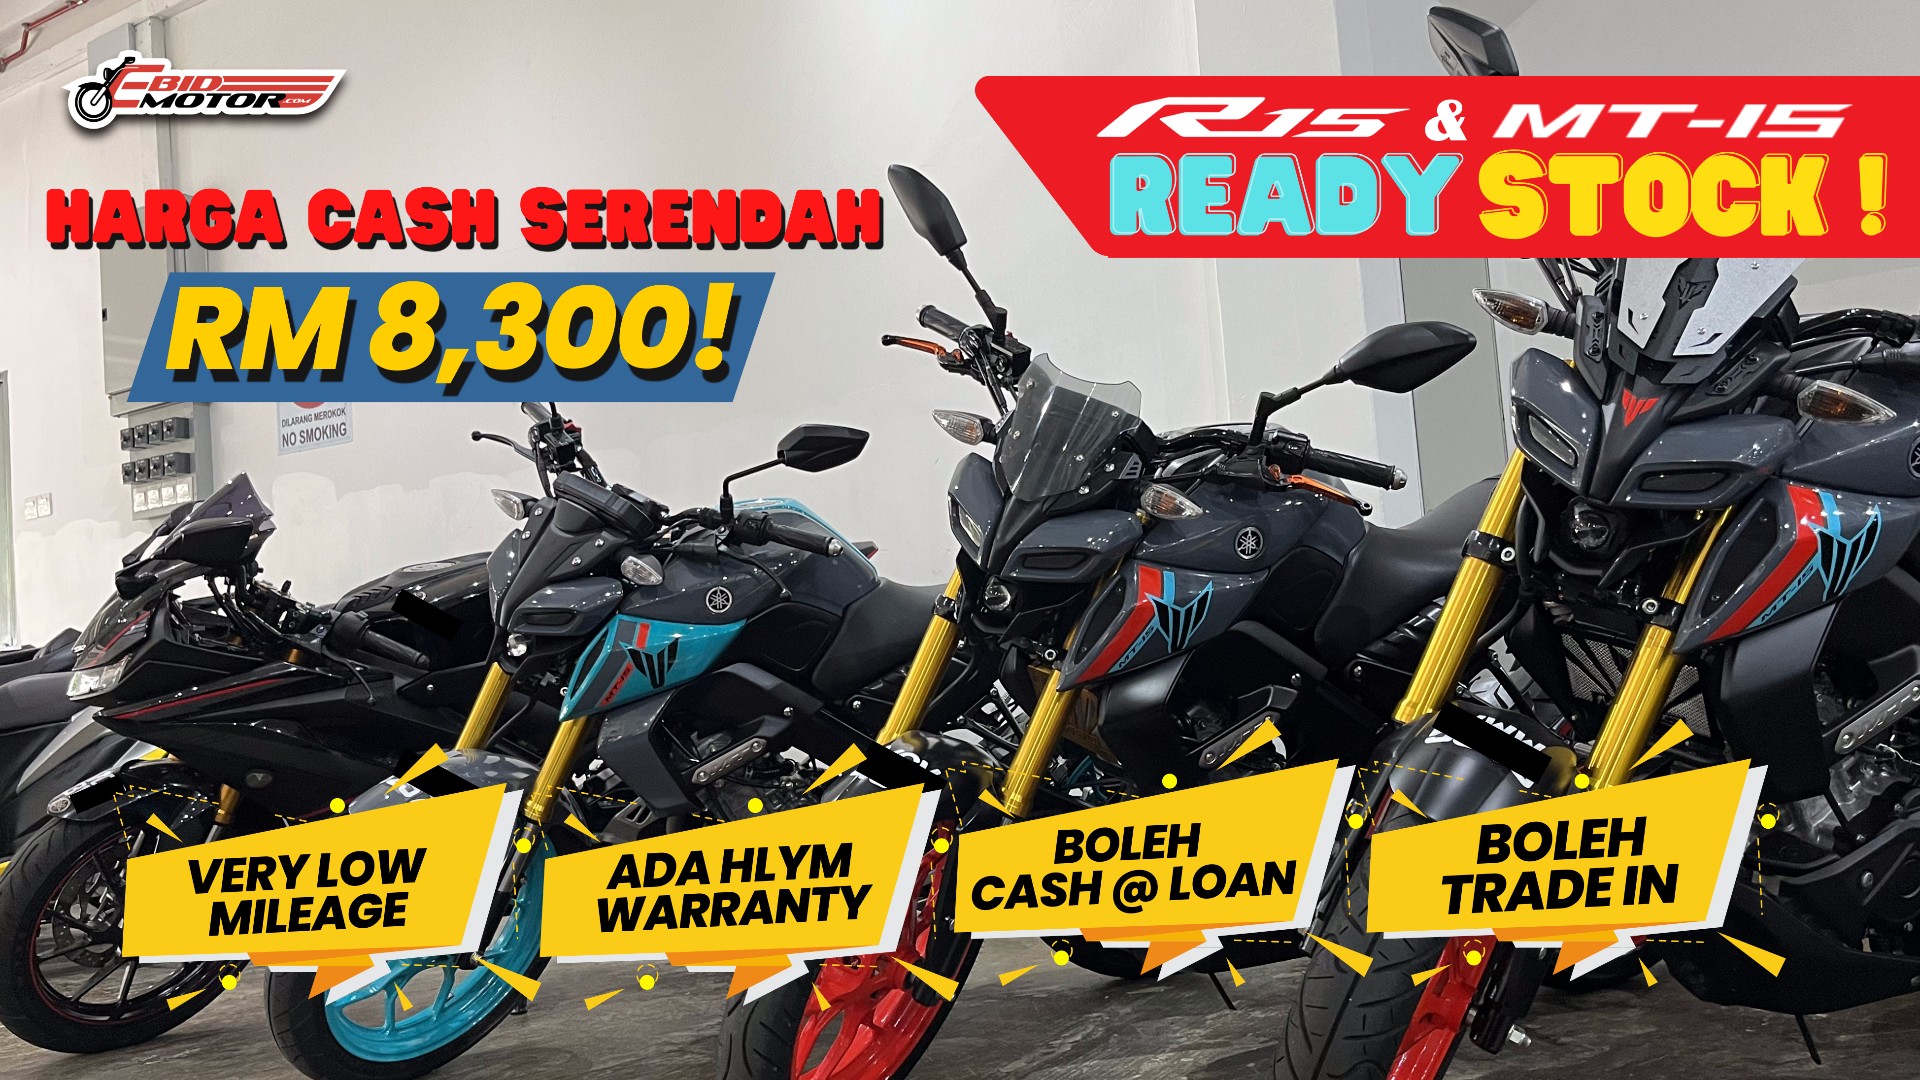 Promosi Ready Stock Termurah Yamaha MT15 & R15! Harga Bermula RM 8,300!